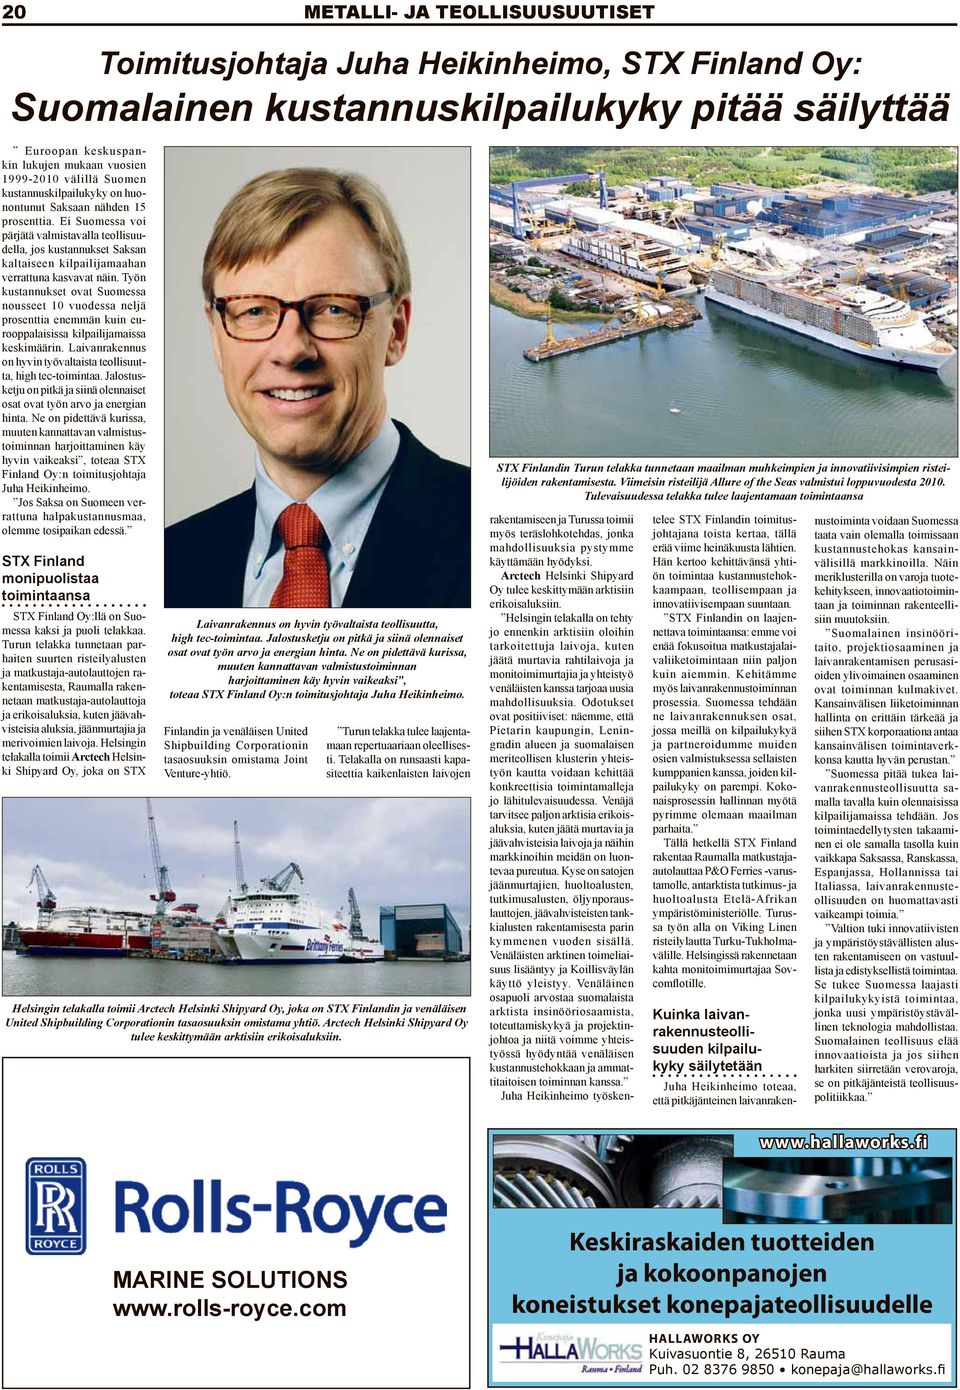 Työn kustannukset ovat Suomessa nousseet 10 vuodessa neljä prosenttia enemmän kuin eurooppalaisissa kilpailijamaissa keskimäärin. Laivanrakennus on hyvin työvaltaista teollisuutta, high tec-toimintaa.